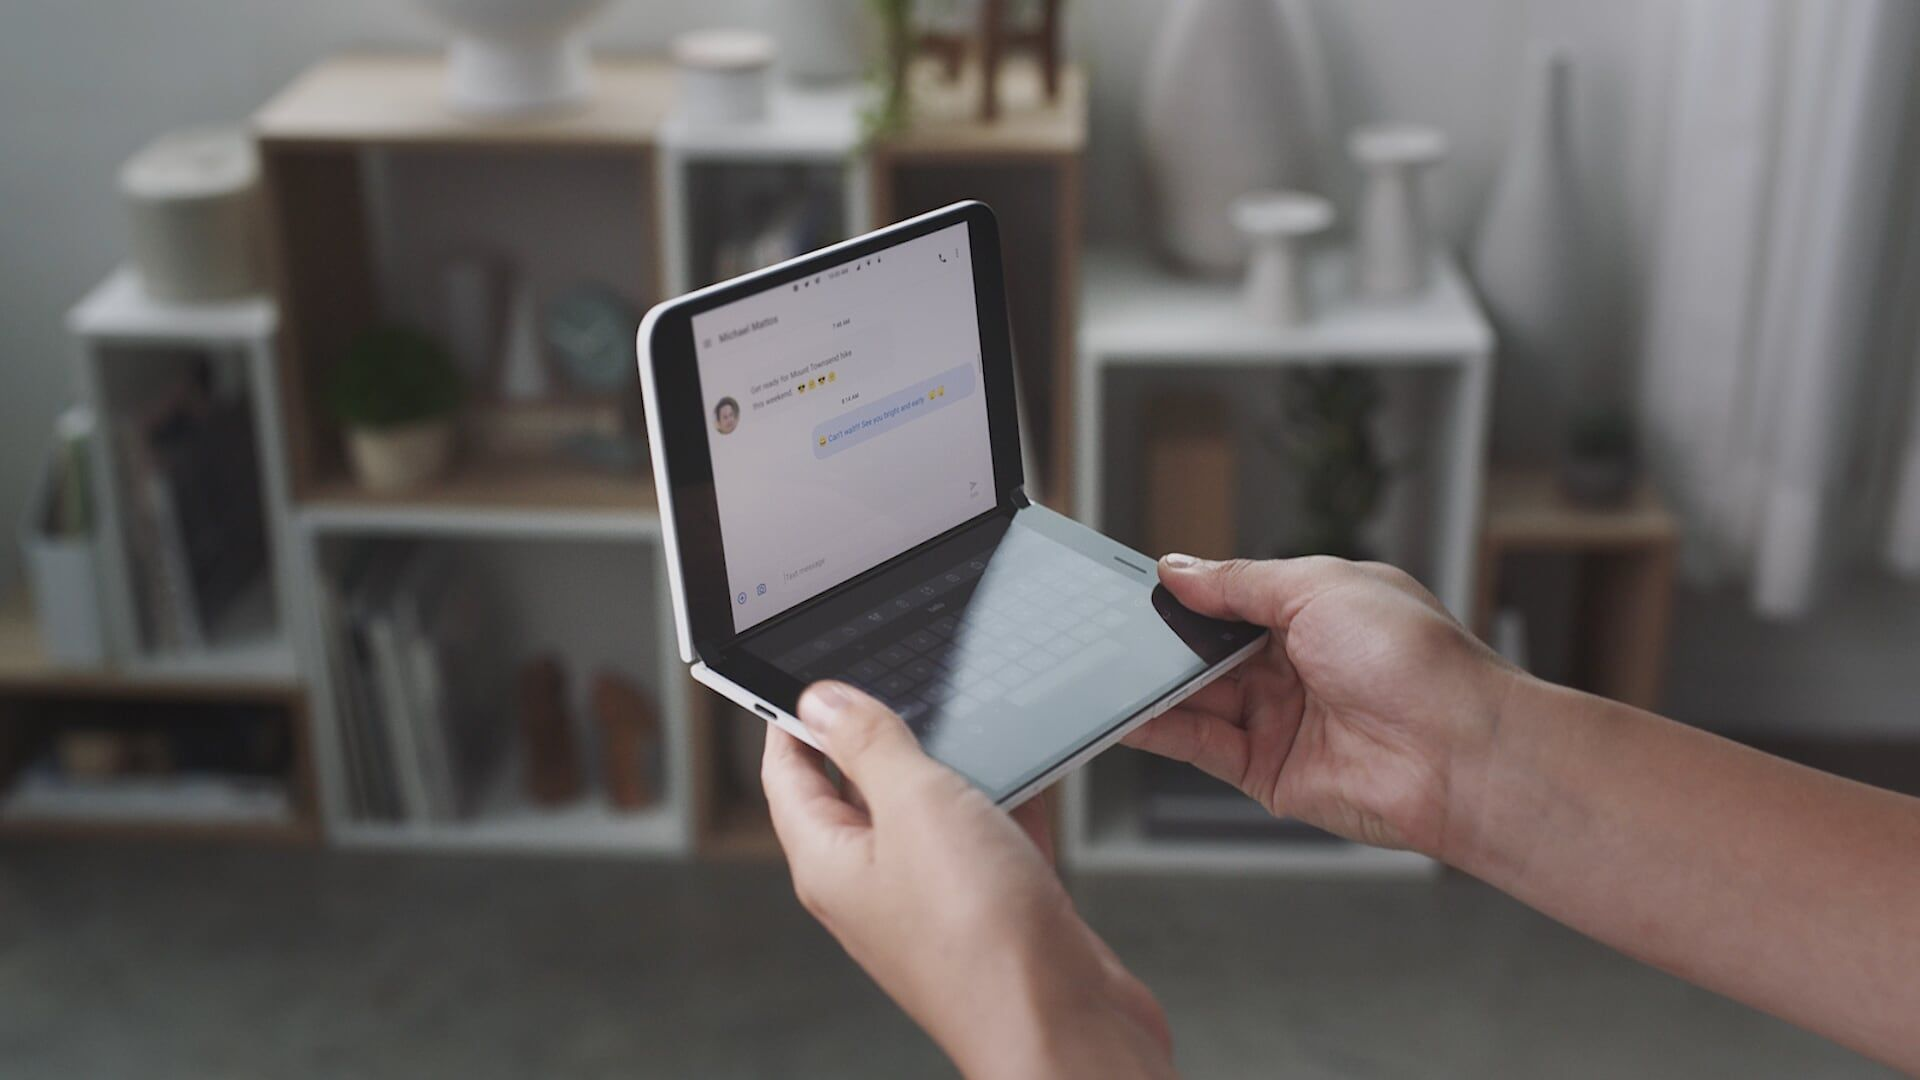 Eine Person hält das Surface Duo in den Händen. Ein Bildschirm wird als Tastatur verwendet, der andere zeigt einen Chat.